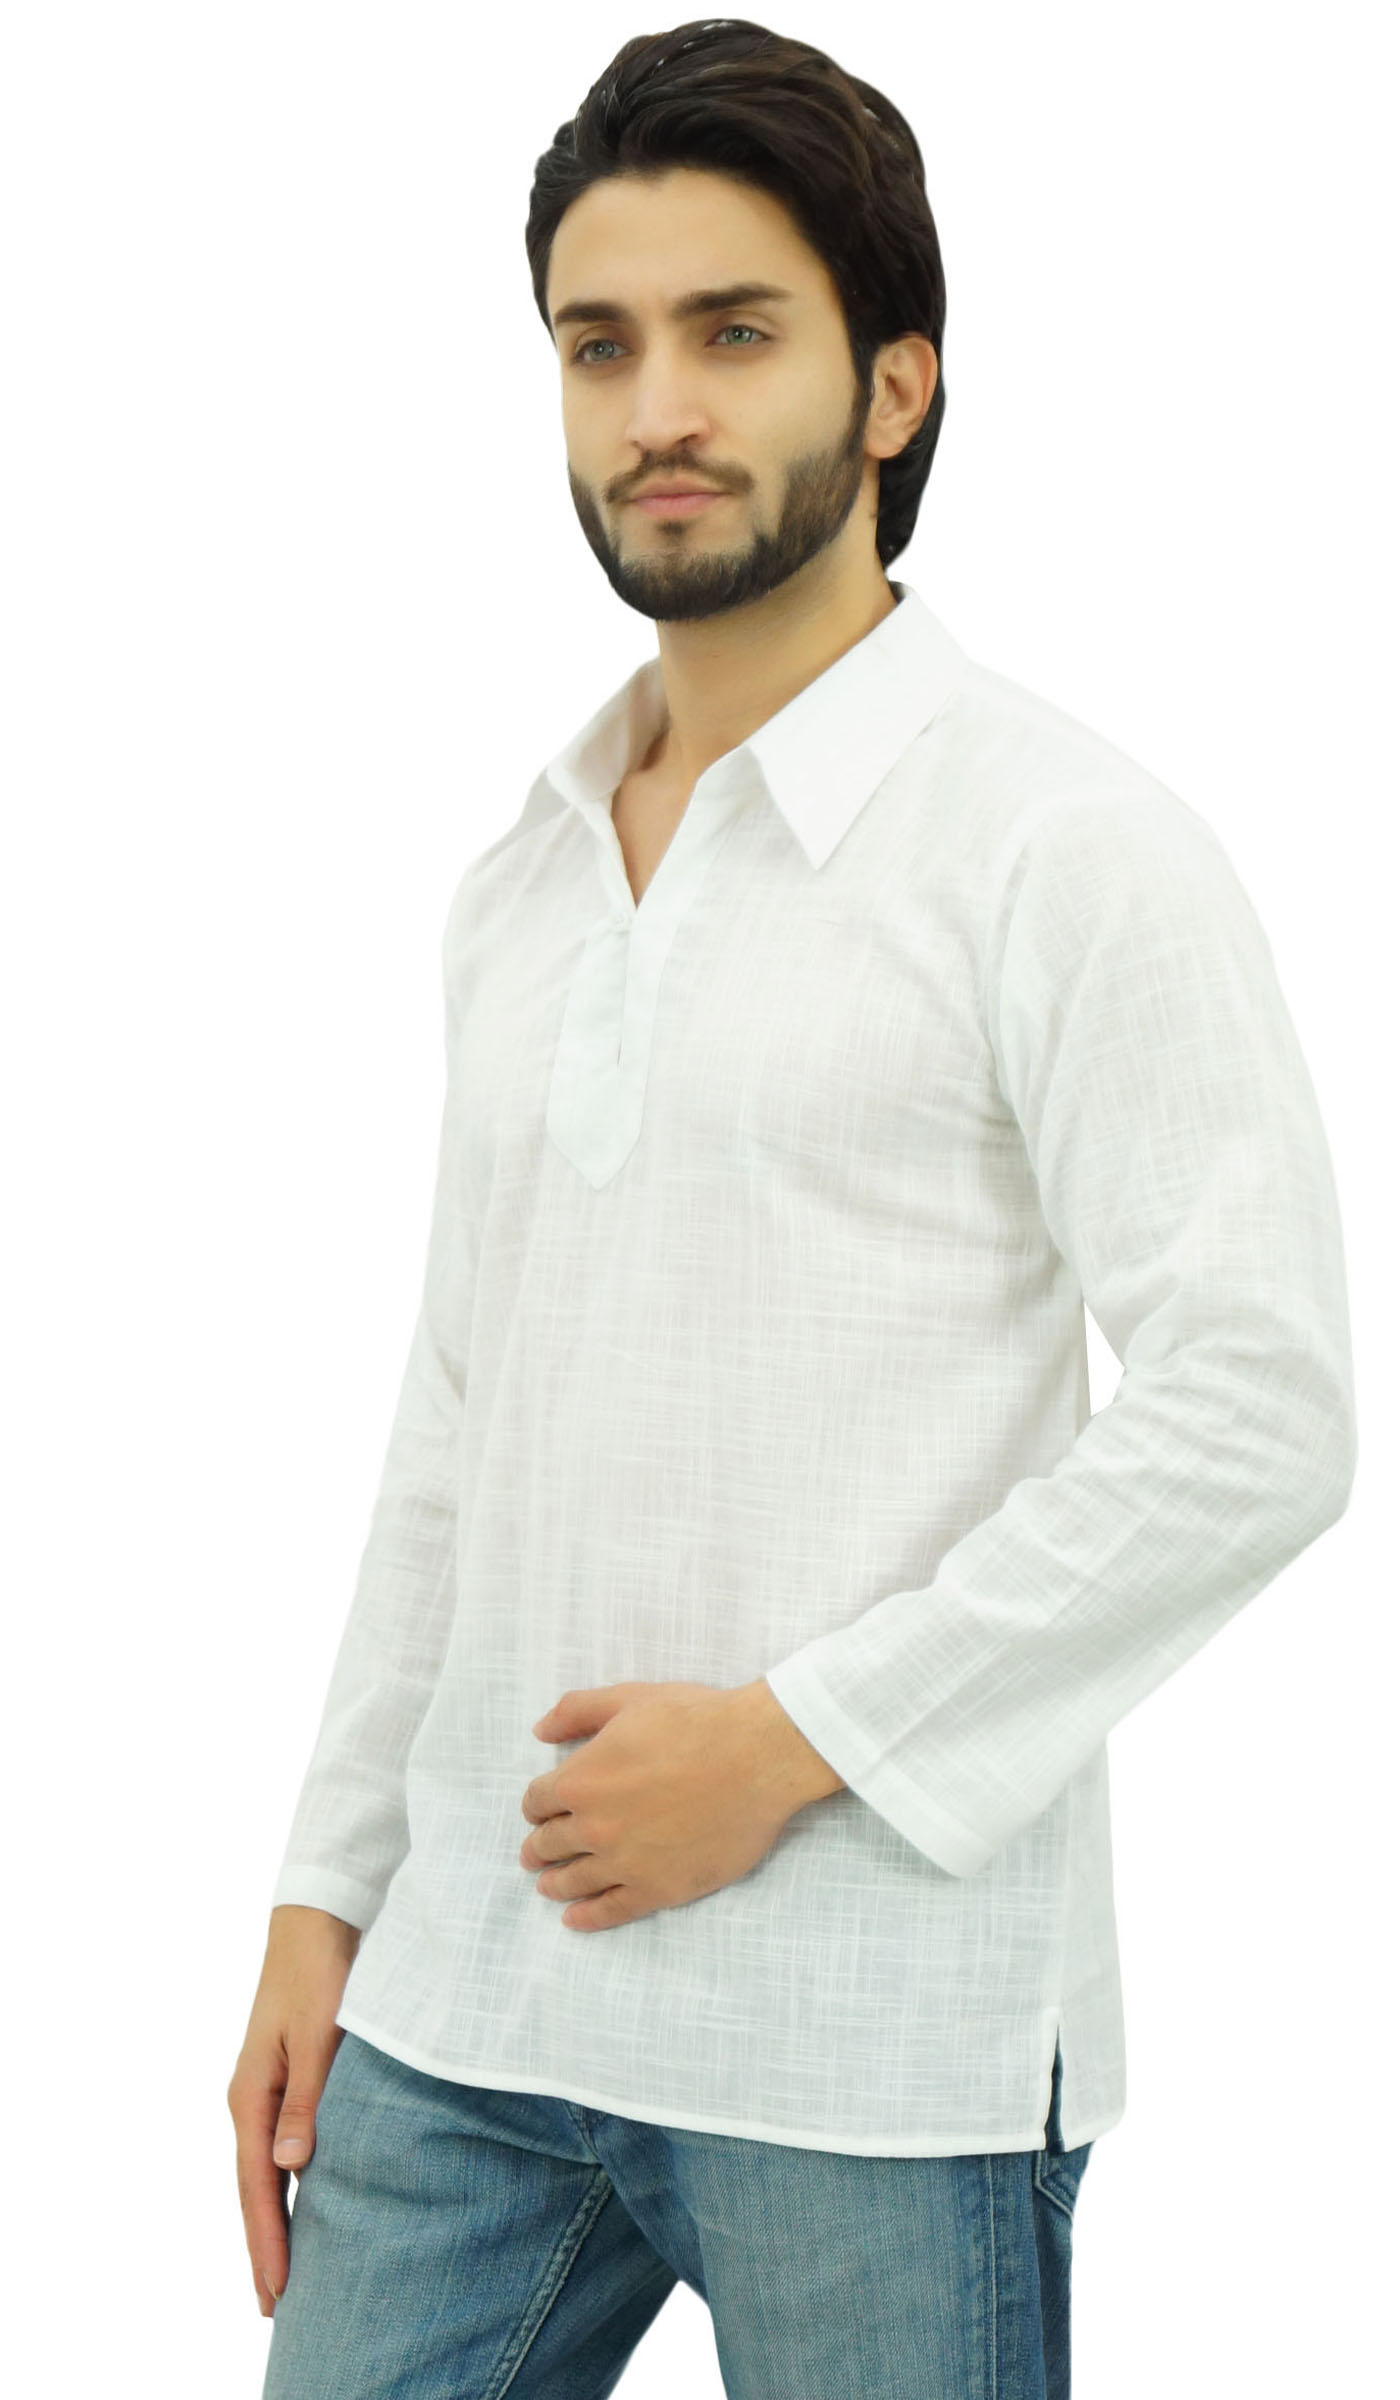 Atasi Indian Ethnic Men's Short Kurta Full Sleeve Collar Cotton-sB1 | eBay